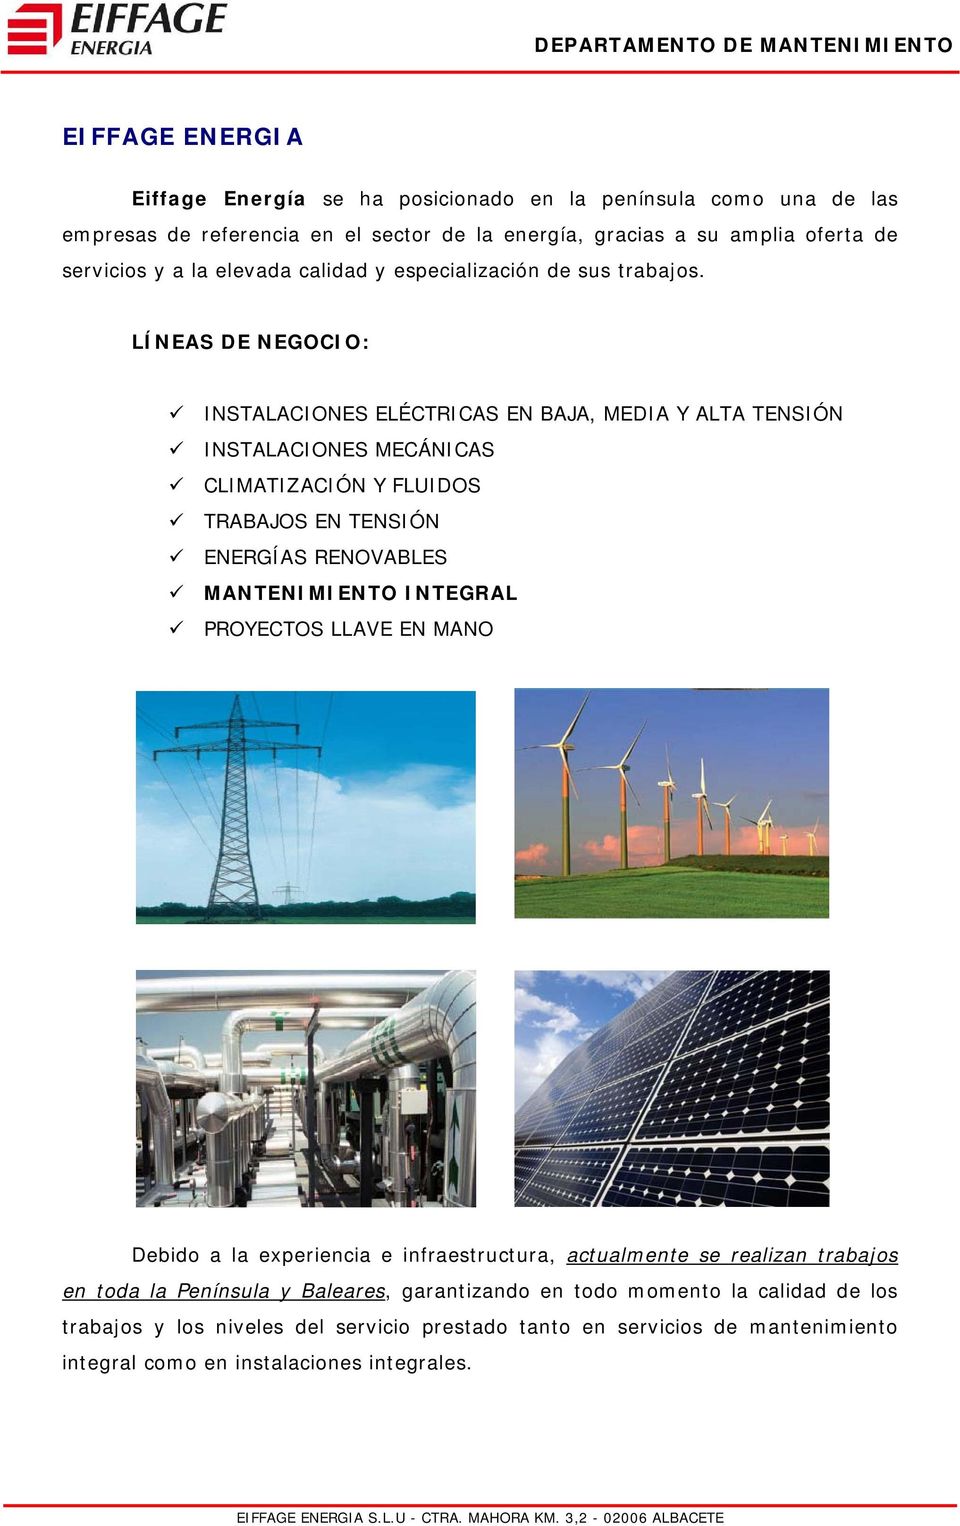 LÍNEAS DE NEGOCIO: INSTALACIONES ELÉCTRICAS EN BAJA, MEDIA Y ALTA TENSIÓN INSTALACIONES MECÁNICAS CLIMATIZACIÓN Y FLUIDOS TRABAJOS EN TENSIÓN ENERGÍAS RENOVABLES MANTENIMIENTO